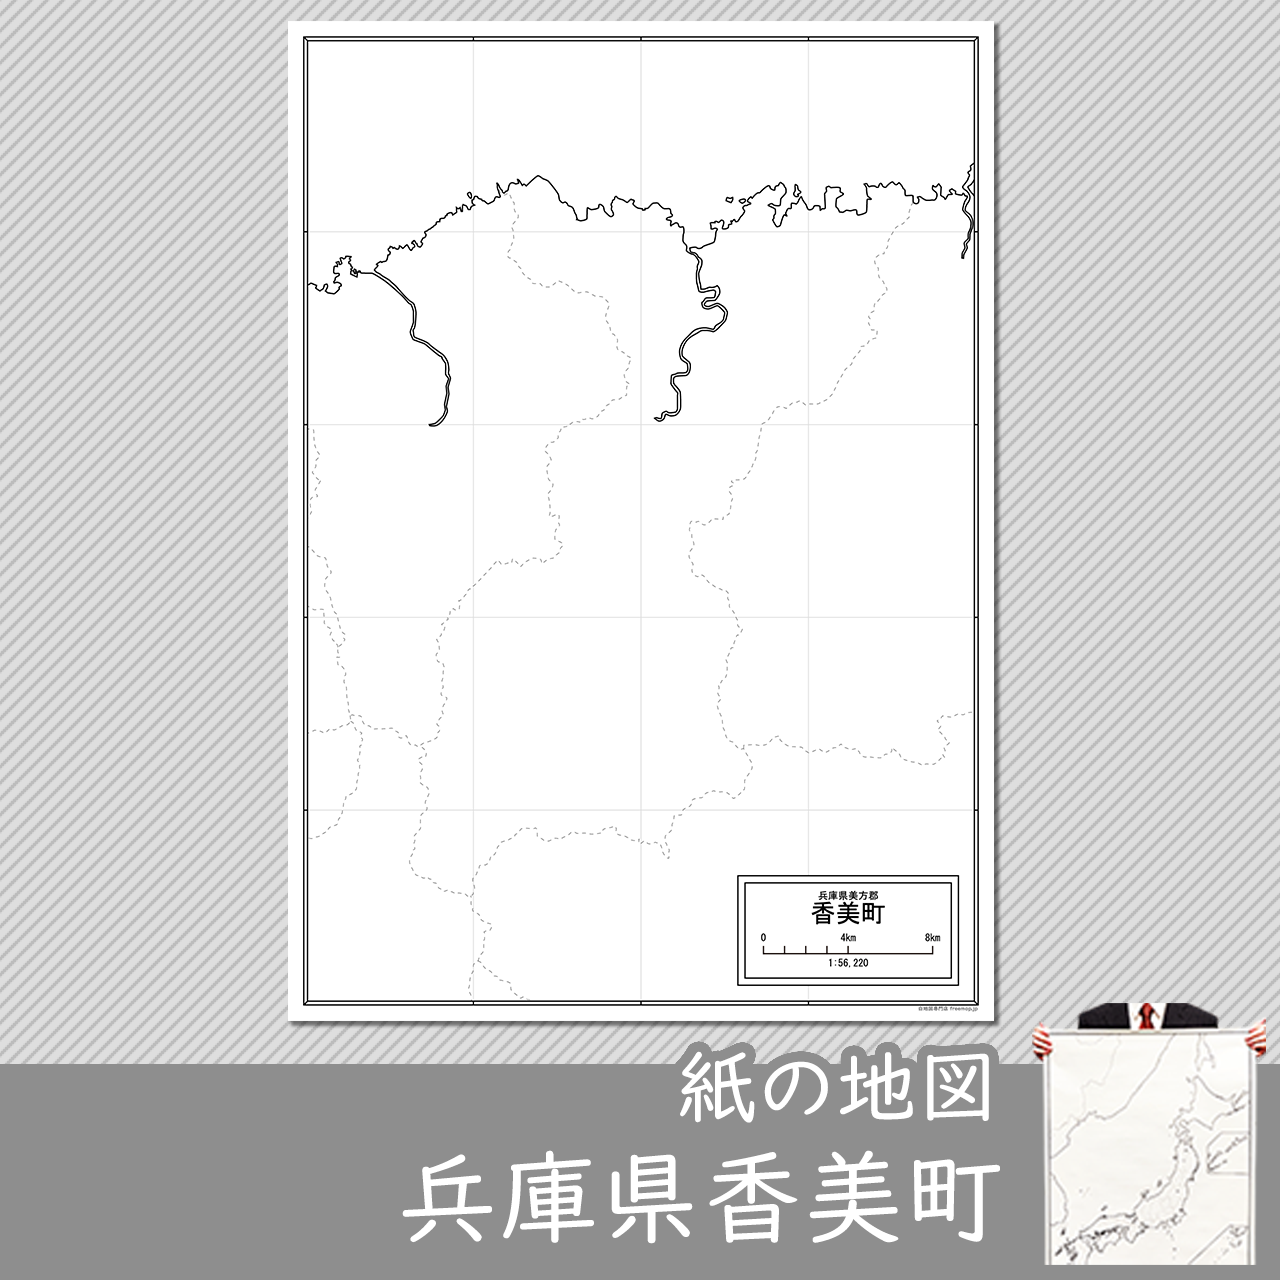 香美町の紙の白地図